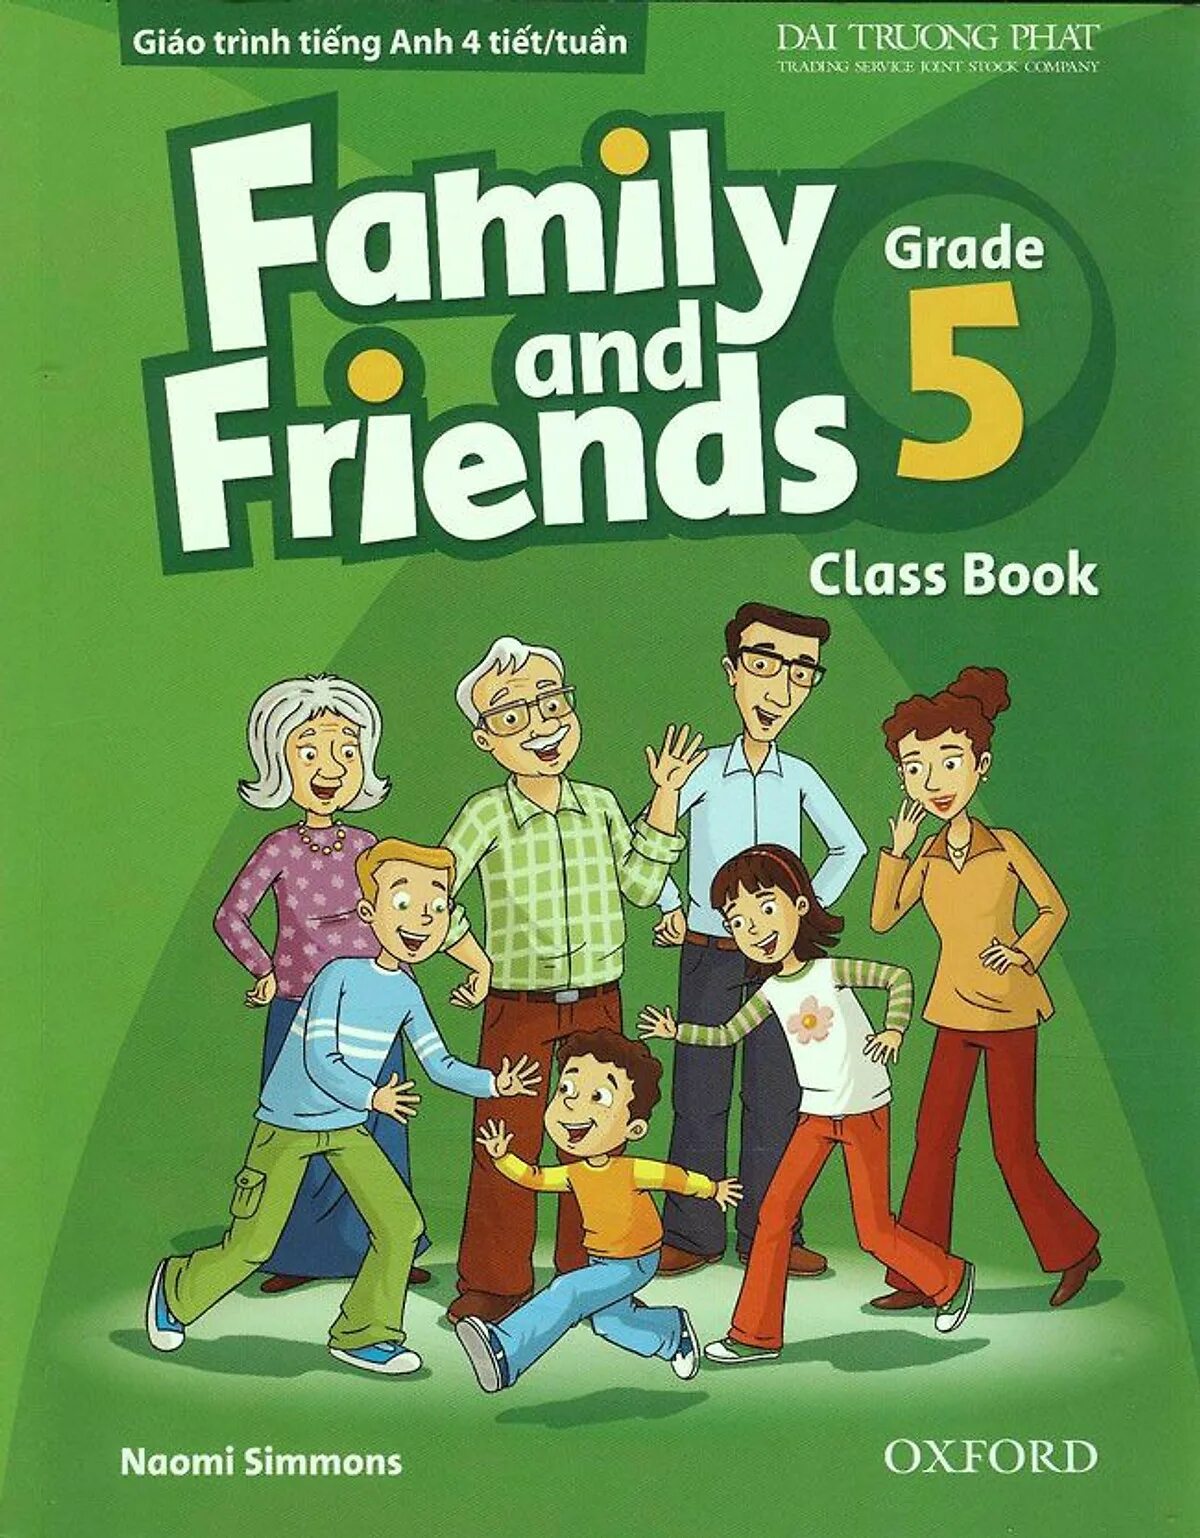 Учебник Family and friends 5. Family English учебник. Фэмили френдс 5. Английский Family and friends.